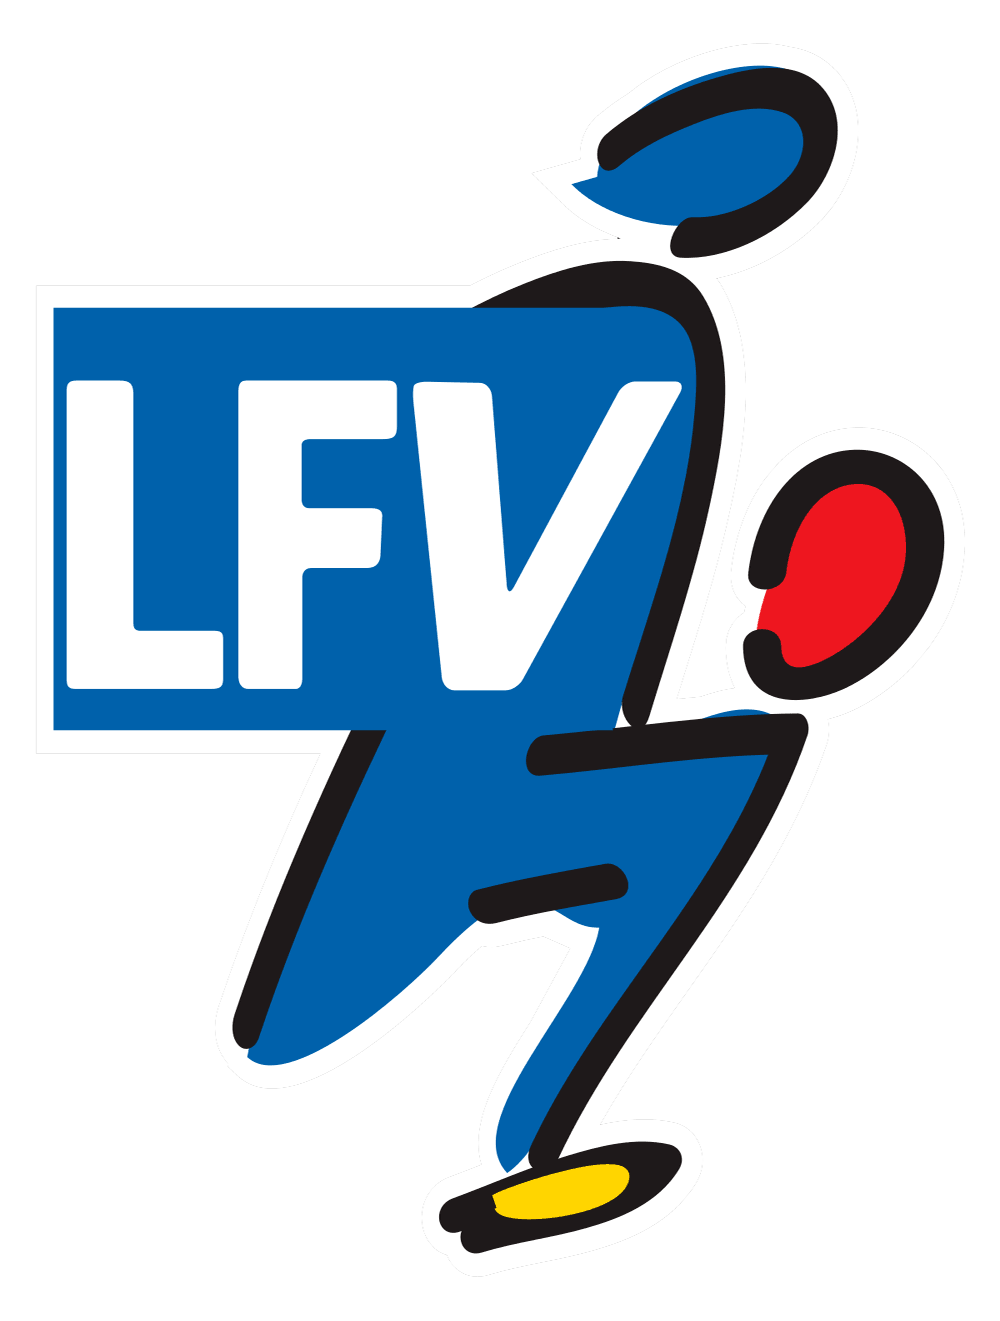 Liechtenstein - FL 1 Cup